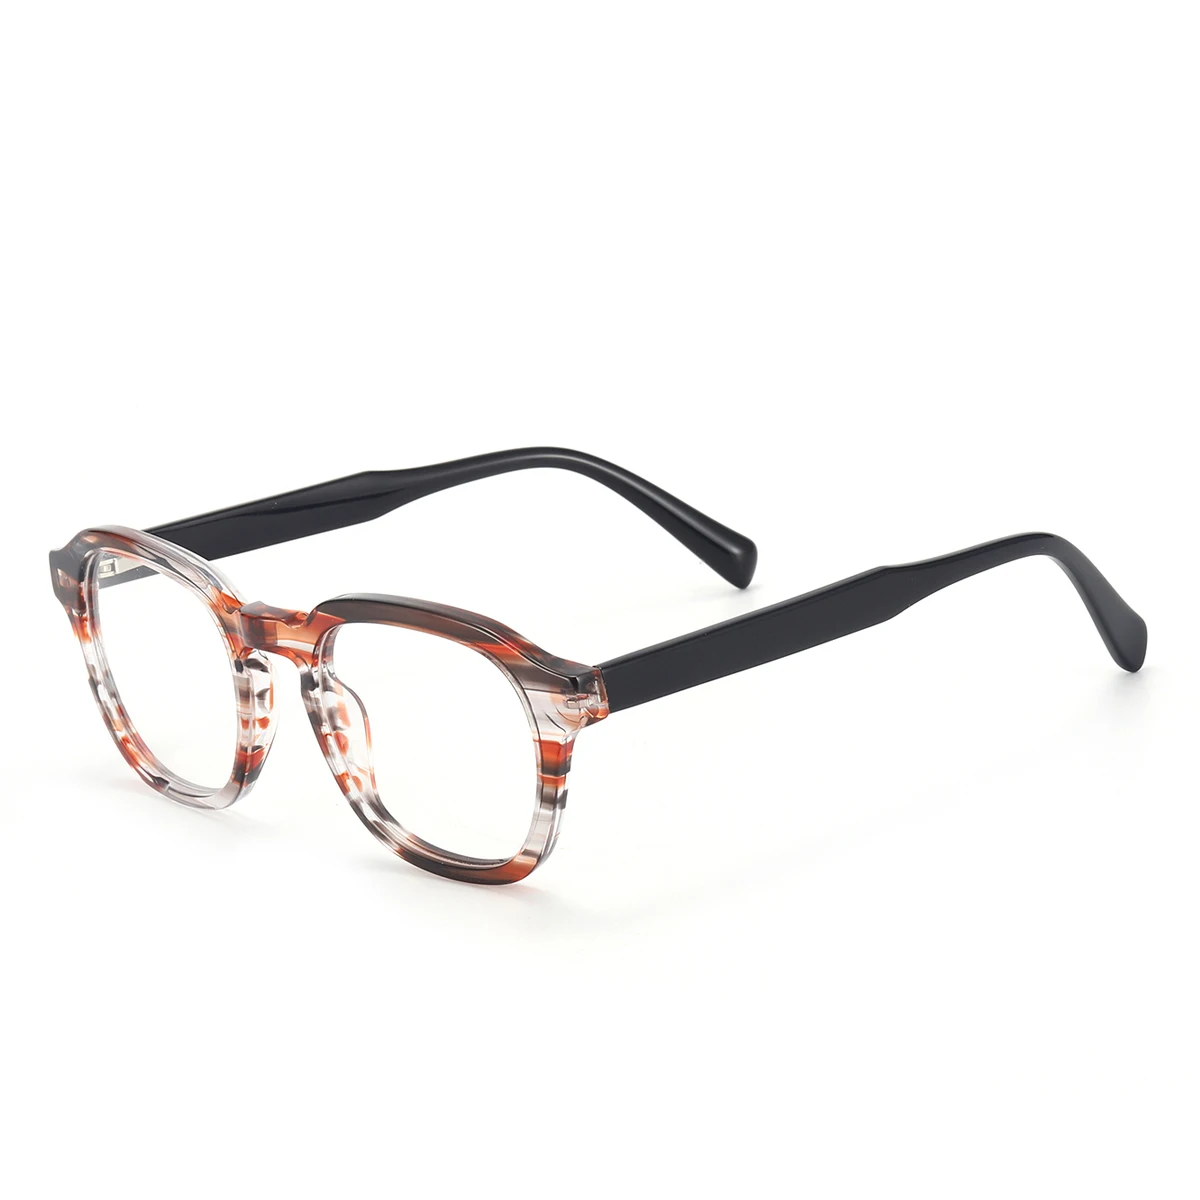 Men and Women Acetate Full Rim Optical Glasses Frame Round With Spring Hinge For Myopia Prescription Lenses